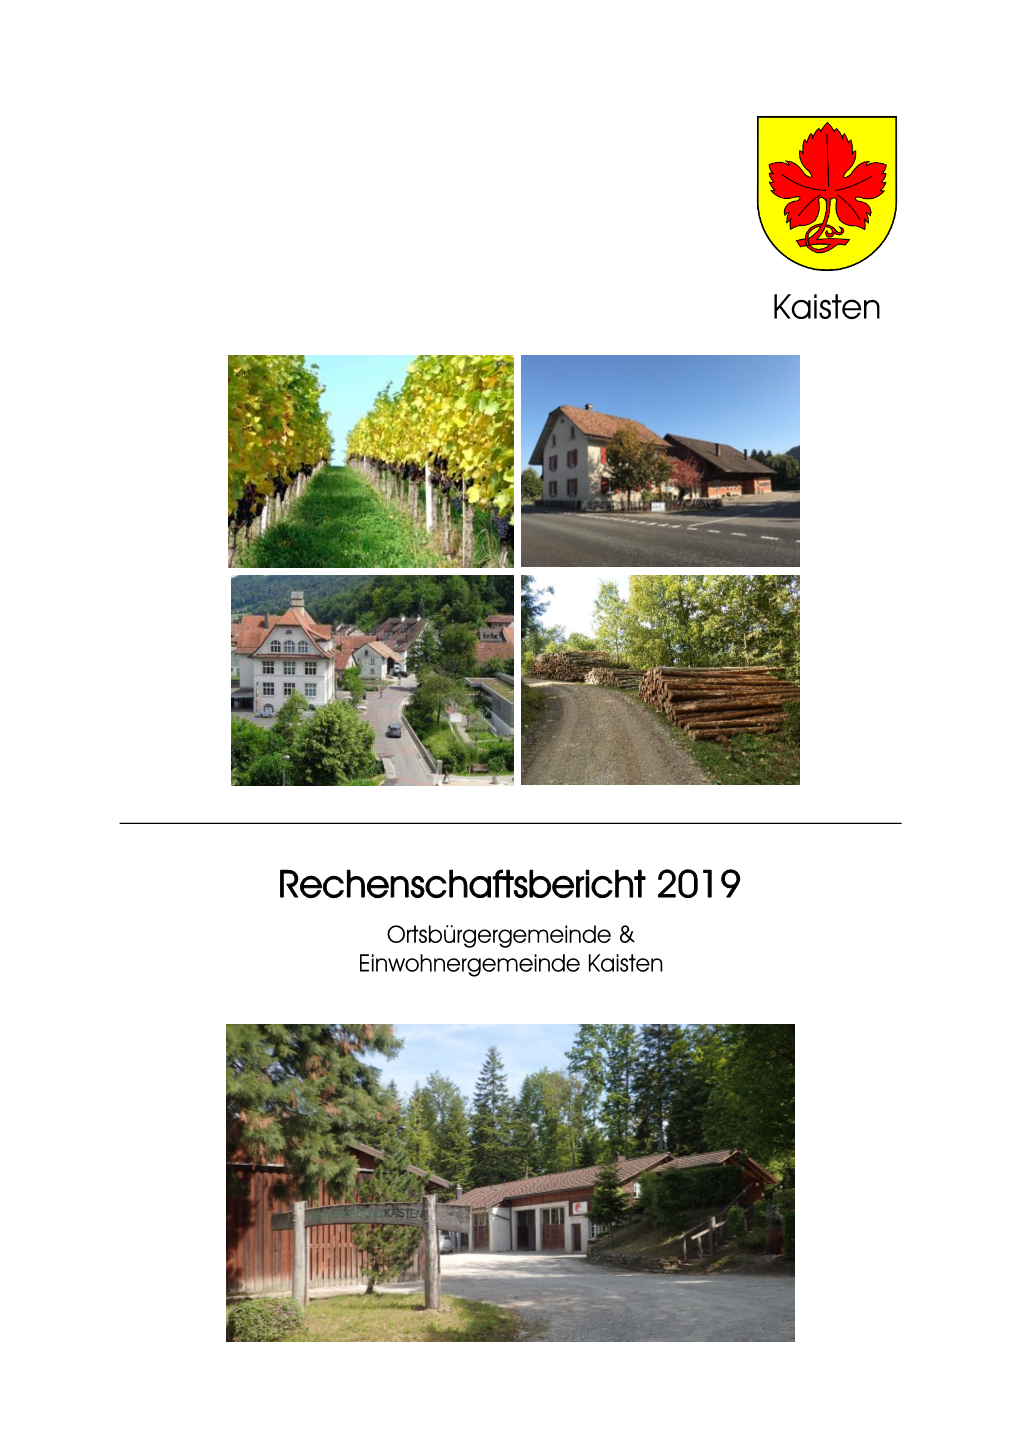 Rechenschaftsbericht 2019 Ortsbürgergemeinde & Einwohnergemeinde Kaisten